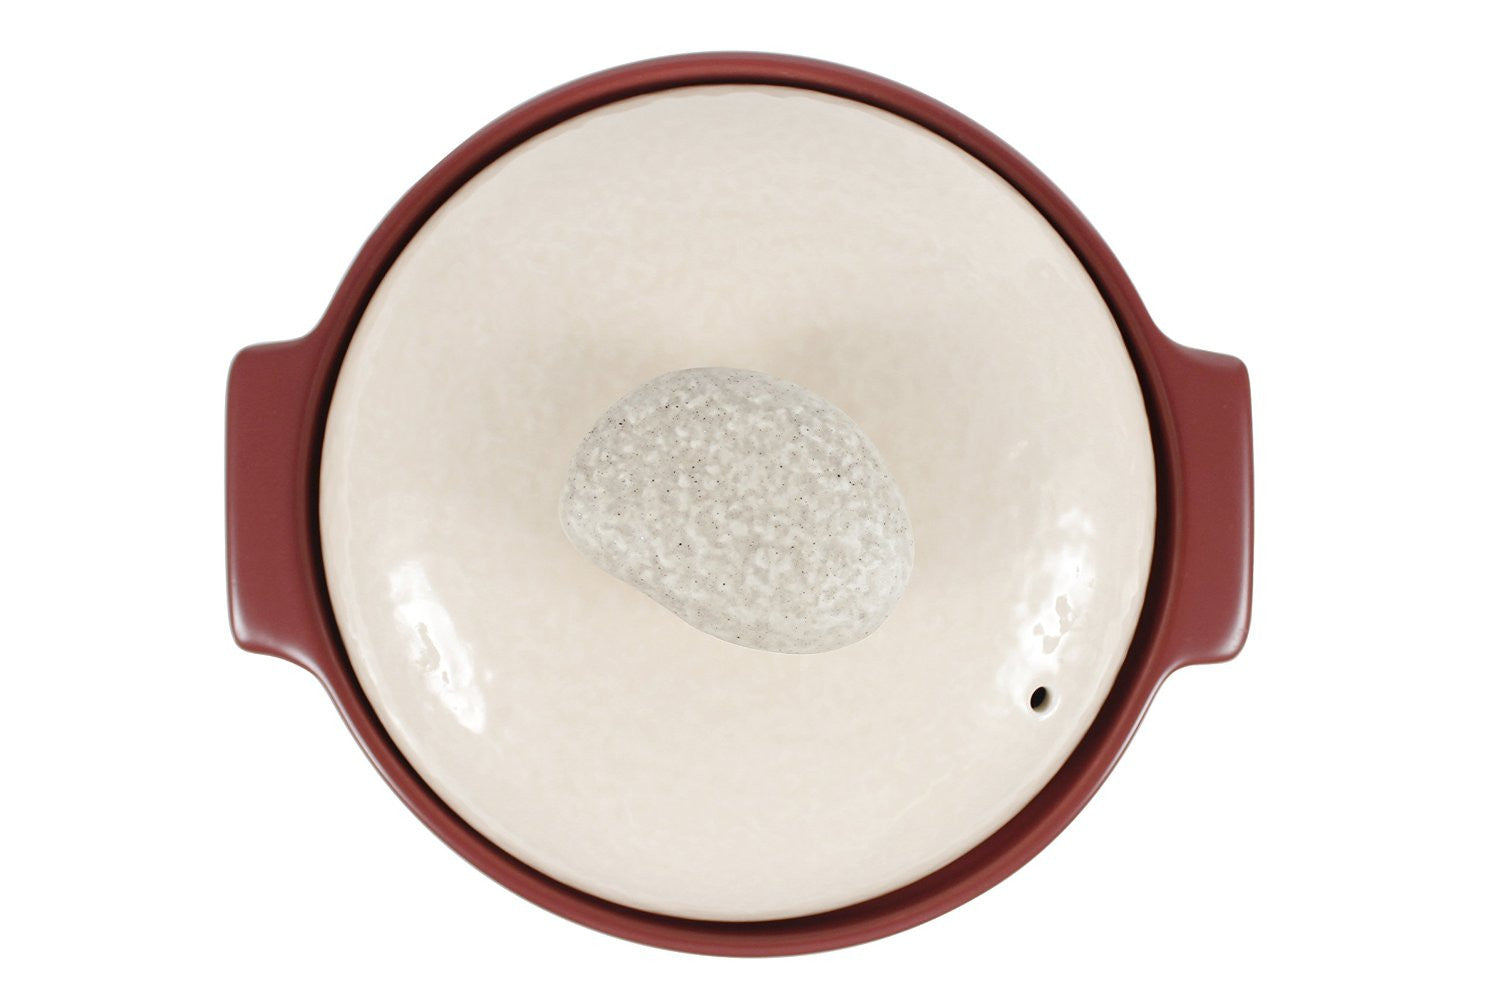 Kiesel in Plum - 2QT - Ceramic Cookware